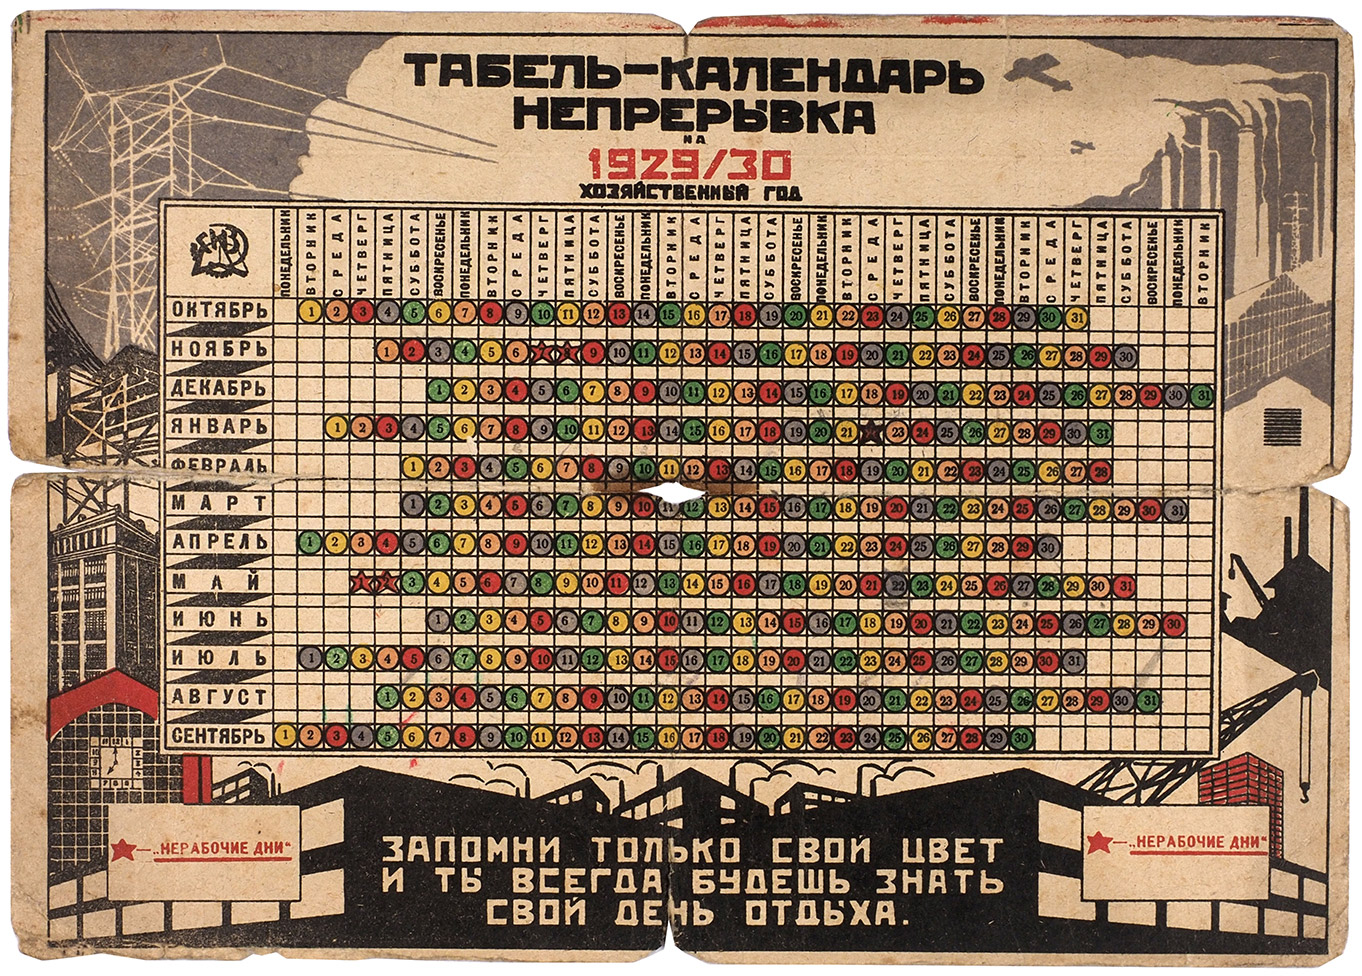 Советский календарь 1929 года. Табель календарь Непрерывка 1929/30. Советский революционный календарь. Календарь 1930. 1929 год был назван годом